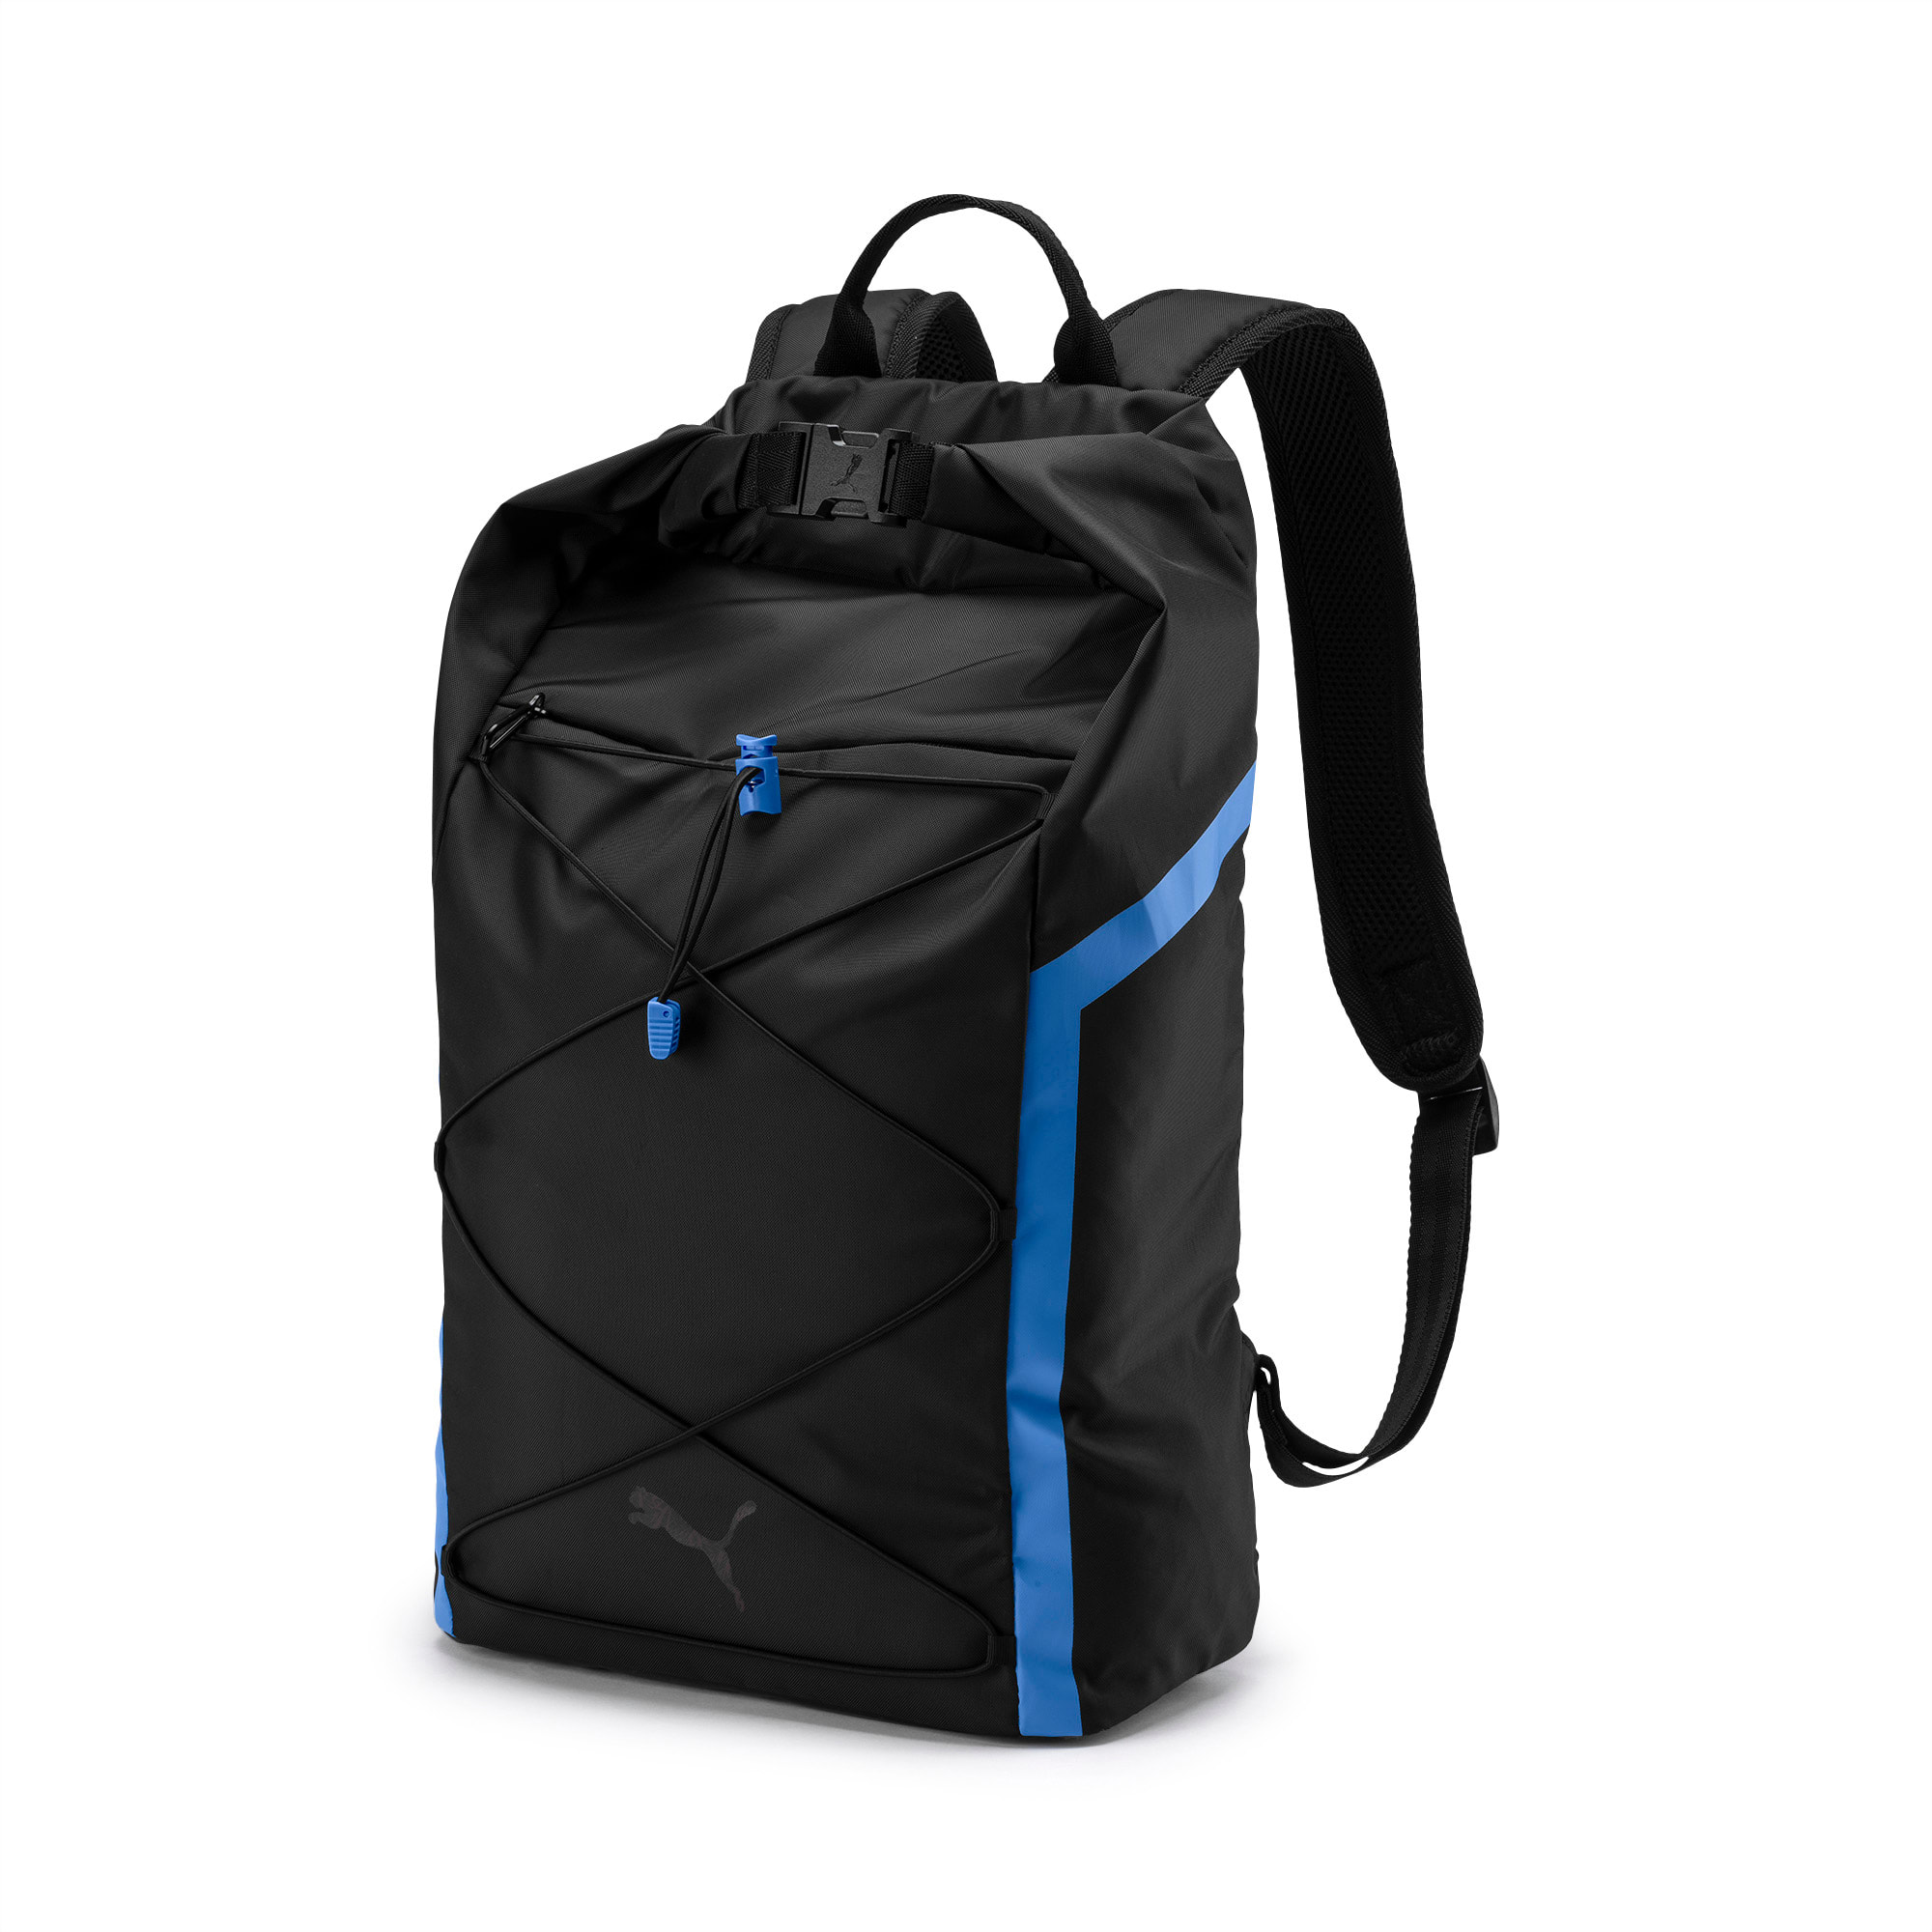 puma black and blue backpack